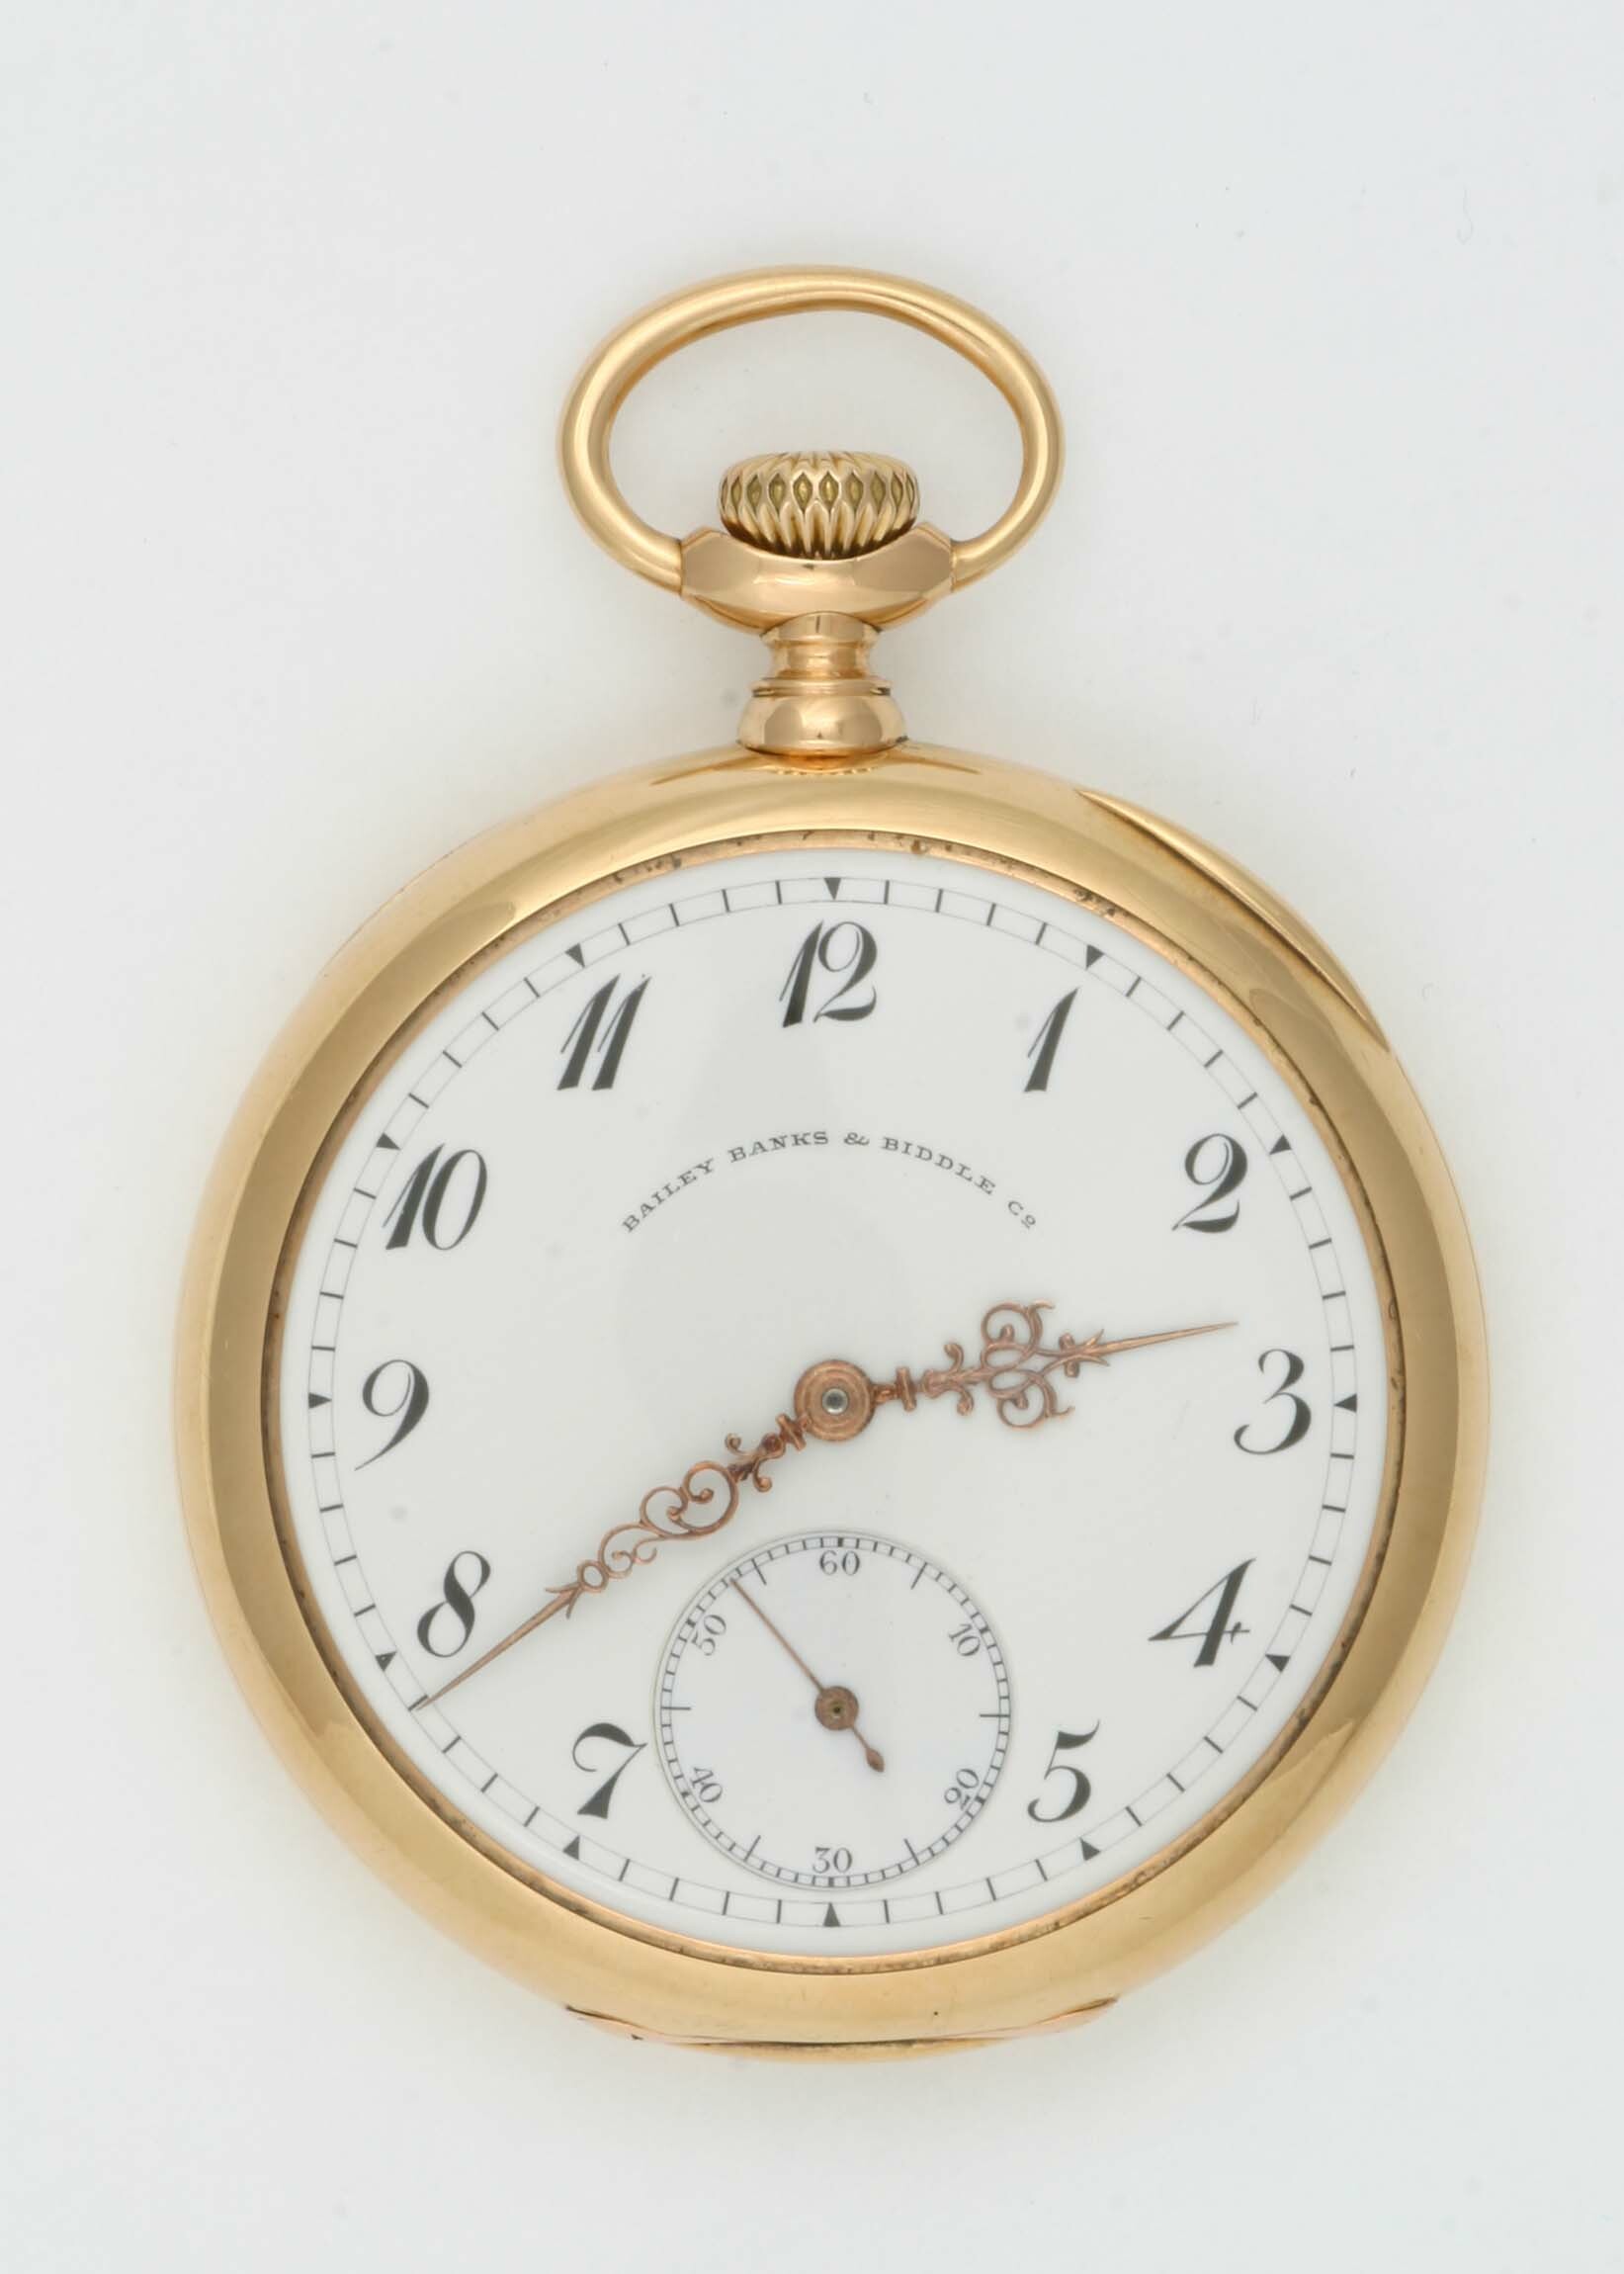 Taschenuhr Bailey, Banks und Biddle Co. (Patek Philippe), Genf, um 1910 (Deutsches Uhrenmuseum CC BY-SA)